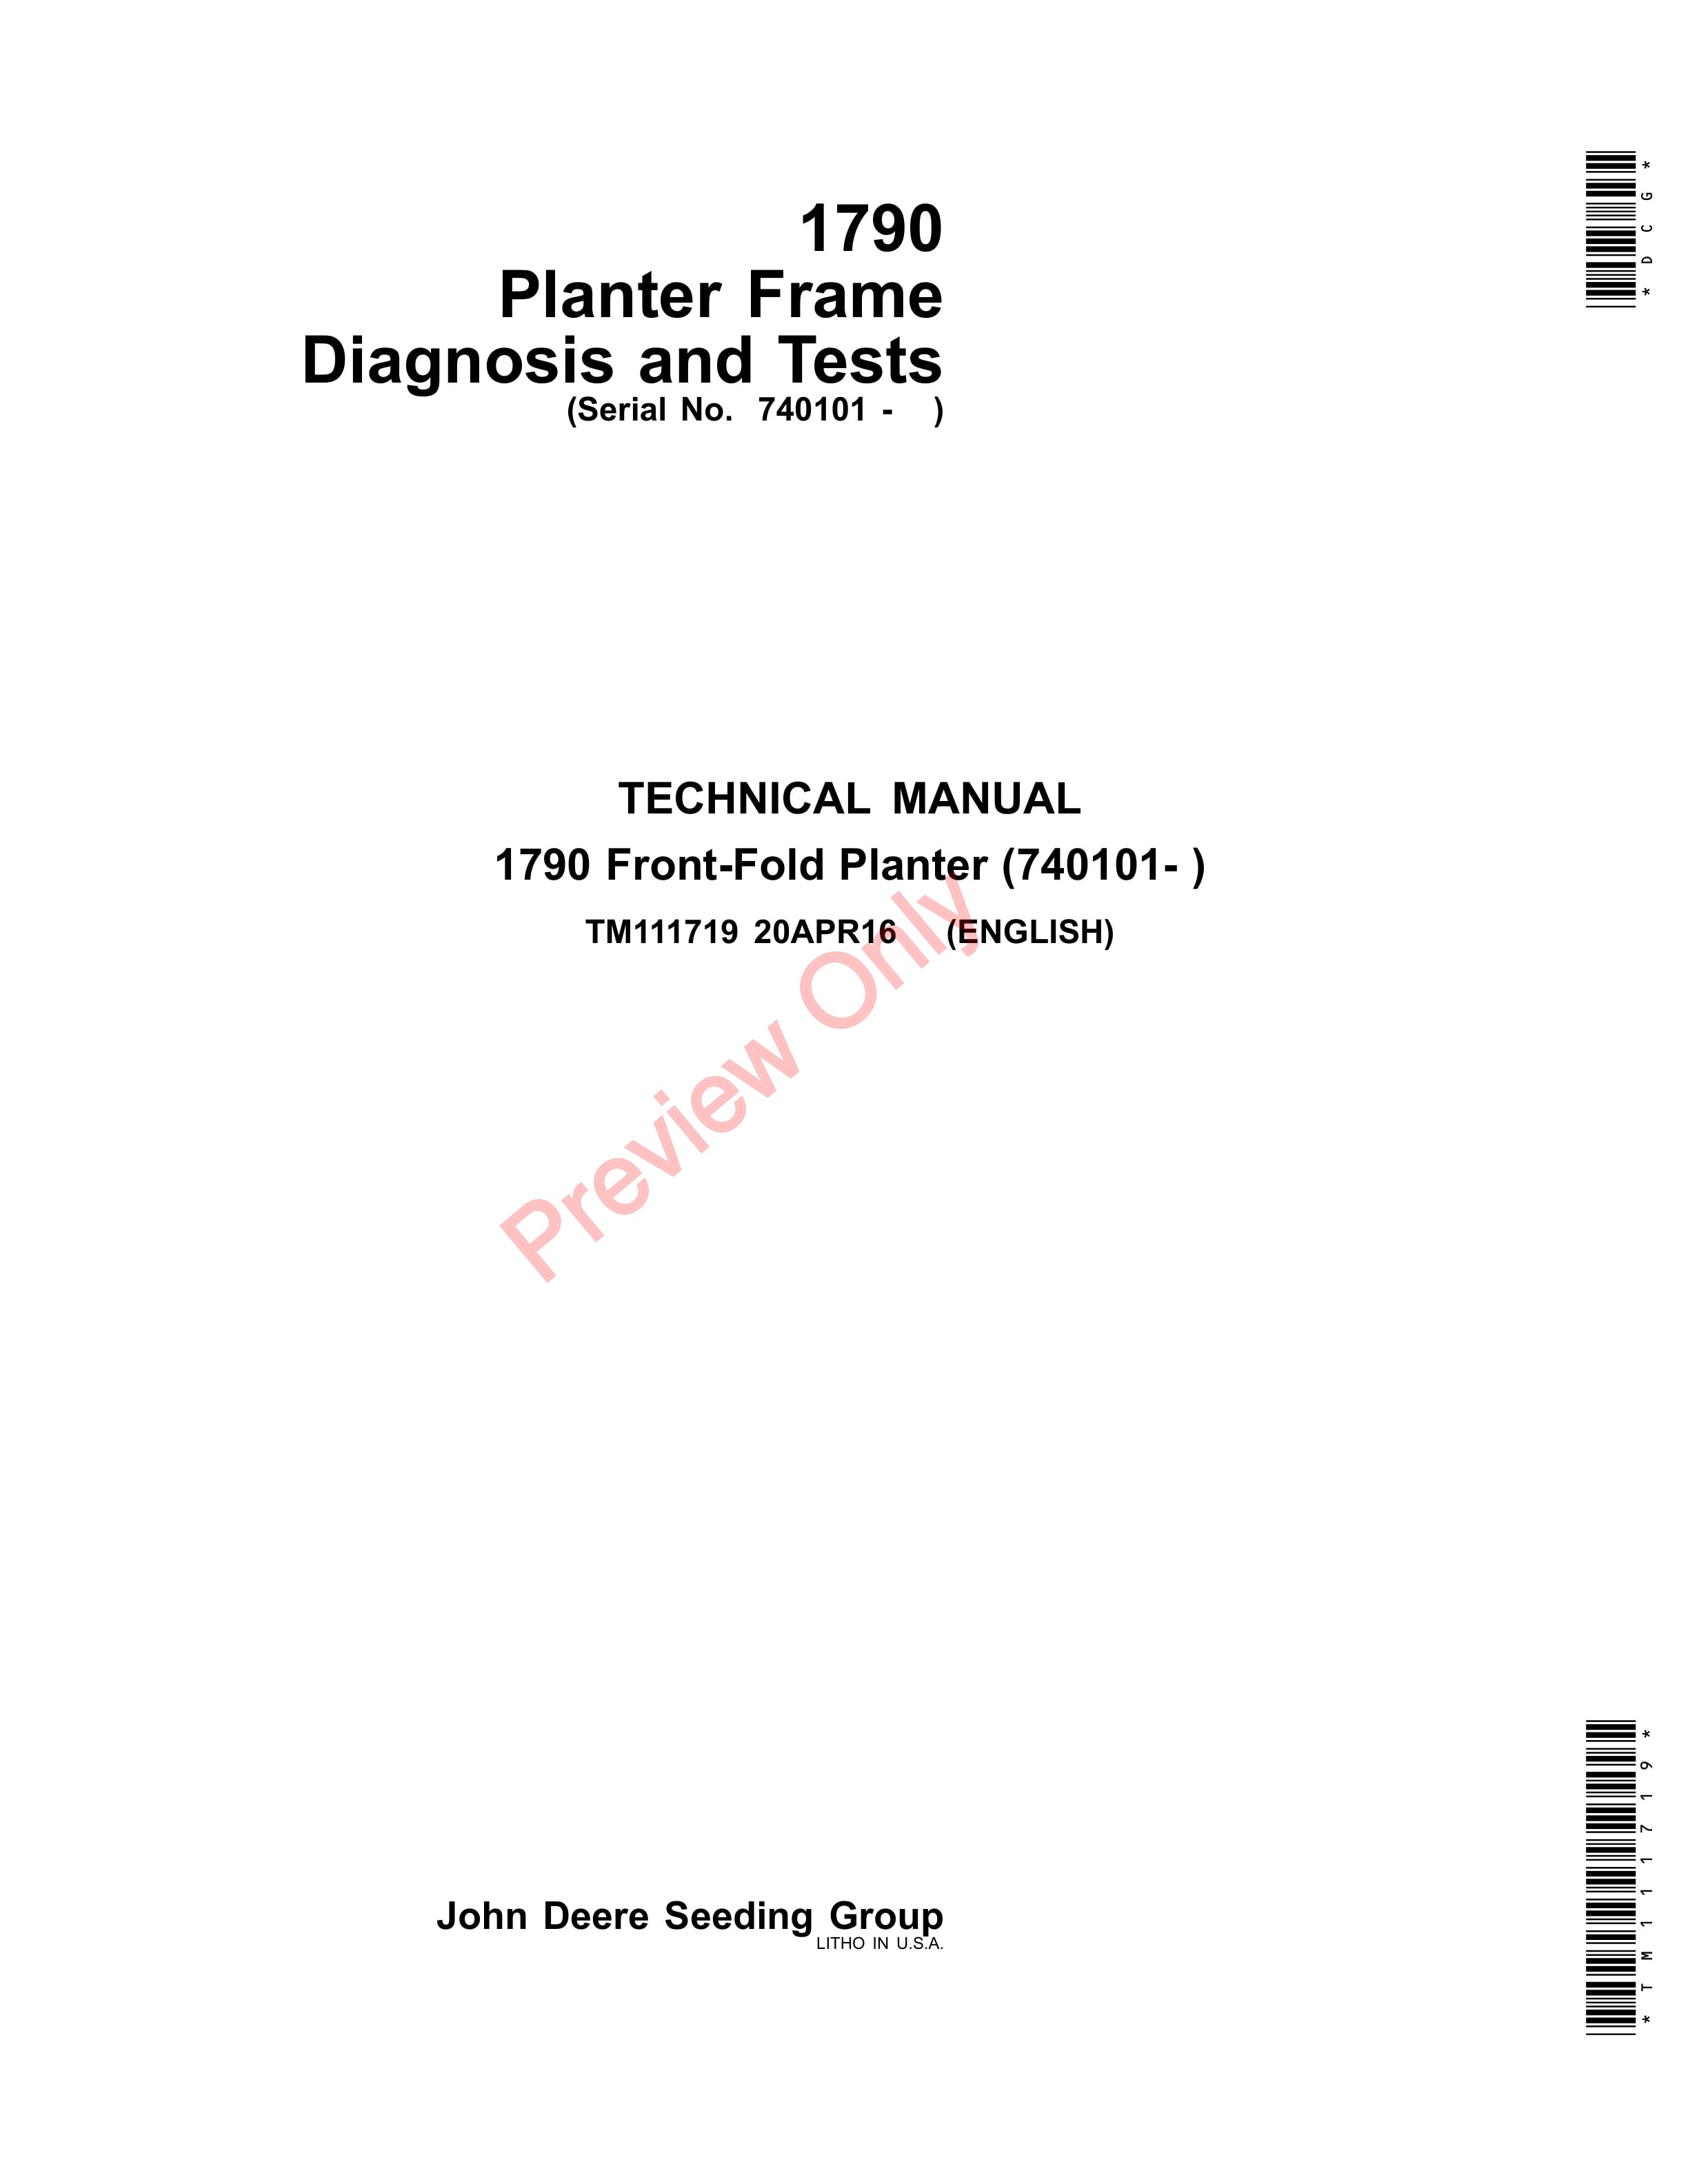 John Deere 1790 Planter Frame 740101 Technical Manual TM111719 20APR16 1